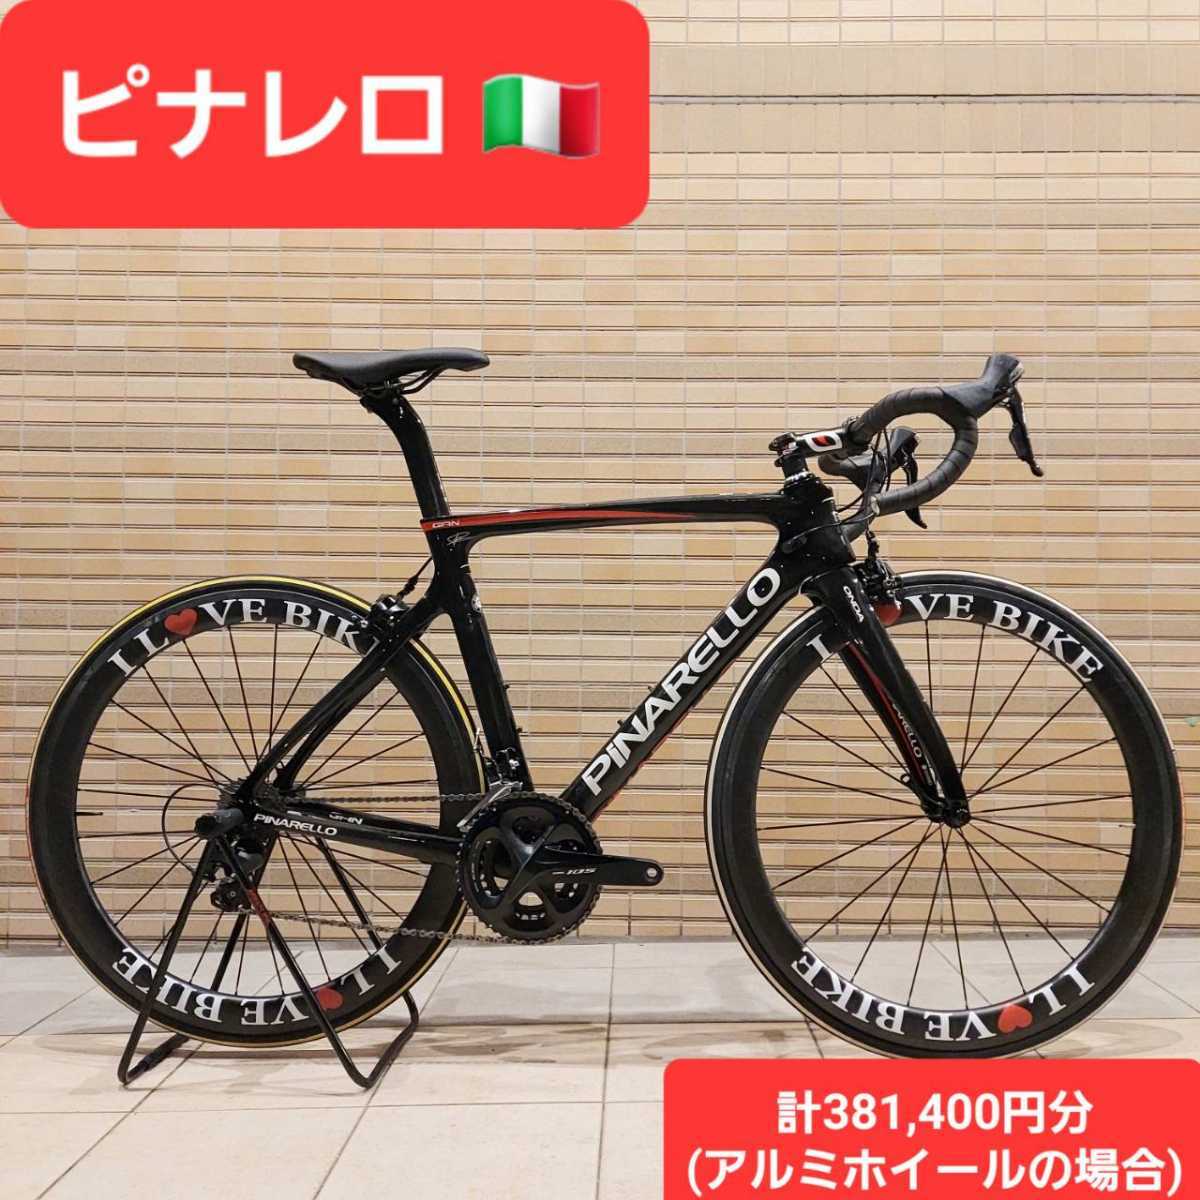 値段が激安 ピナレロ ロードバイク コンポジットカーボン sushitai.com.mx